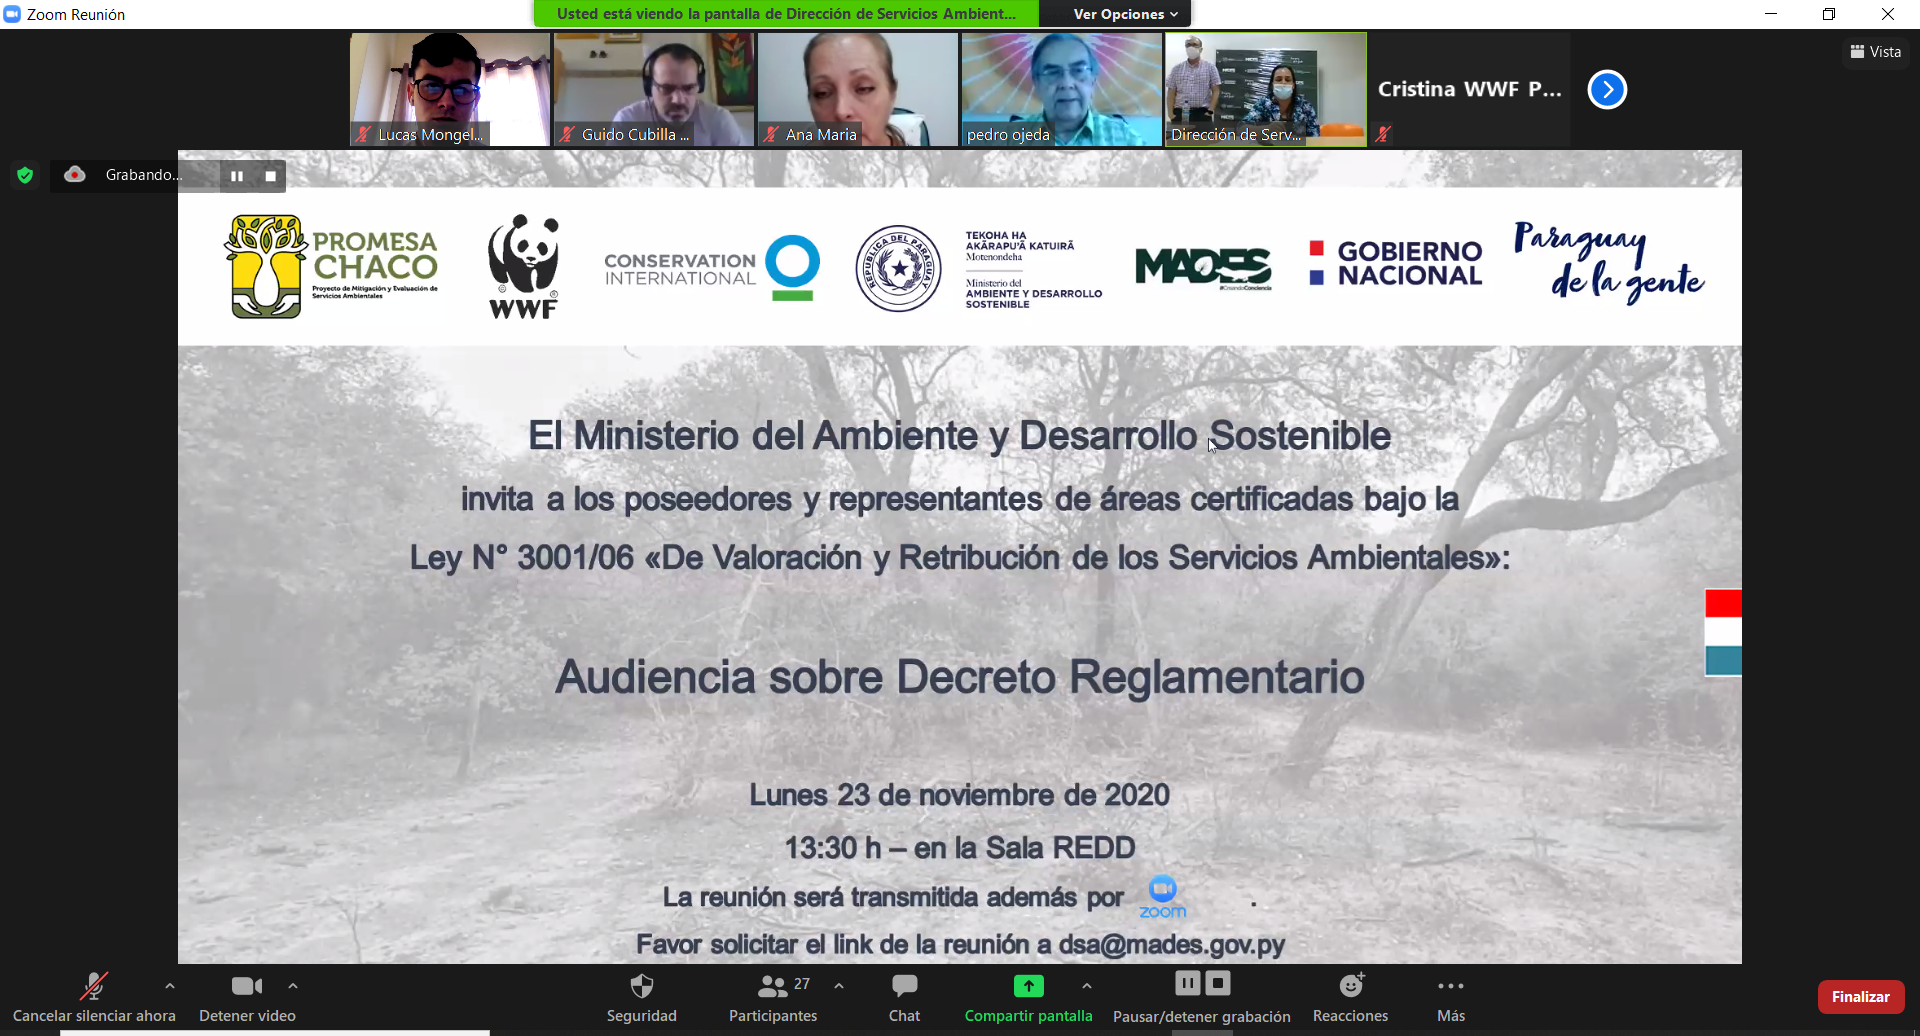 Servicios Ambientales: Audiencia sobre Decreto Reglamentario